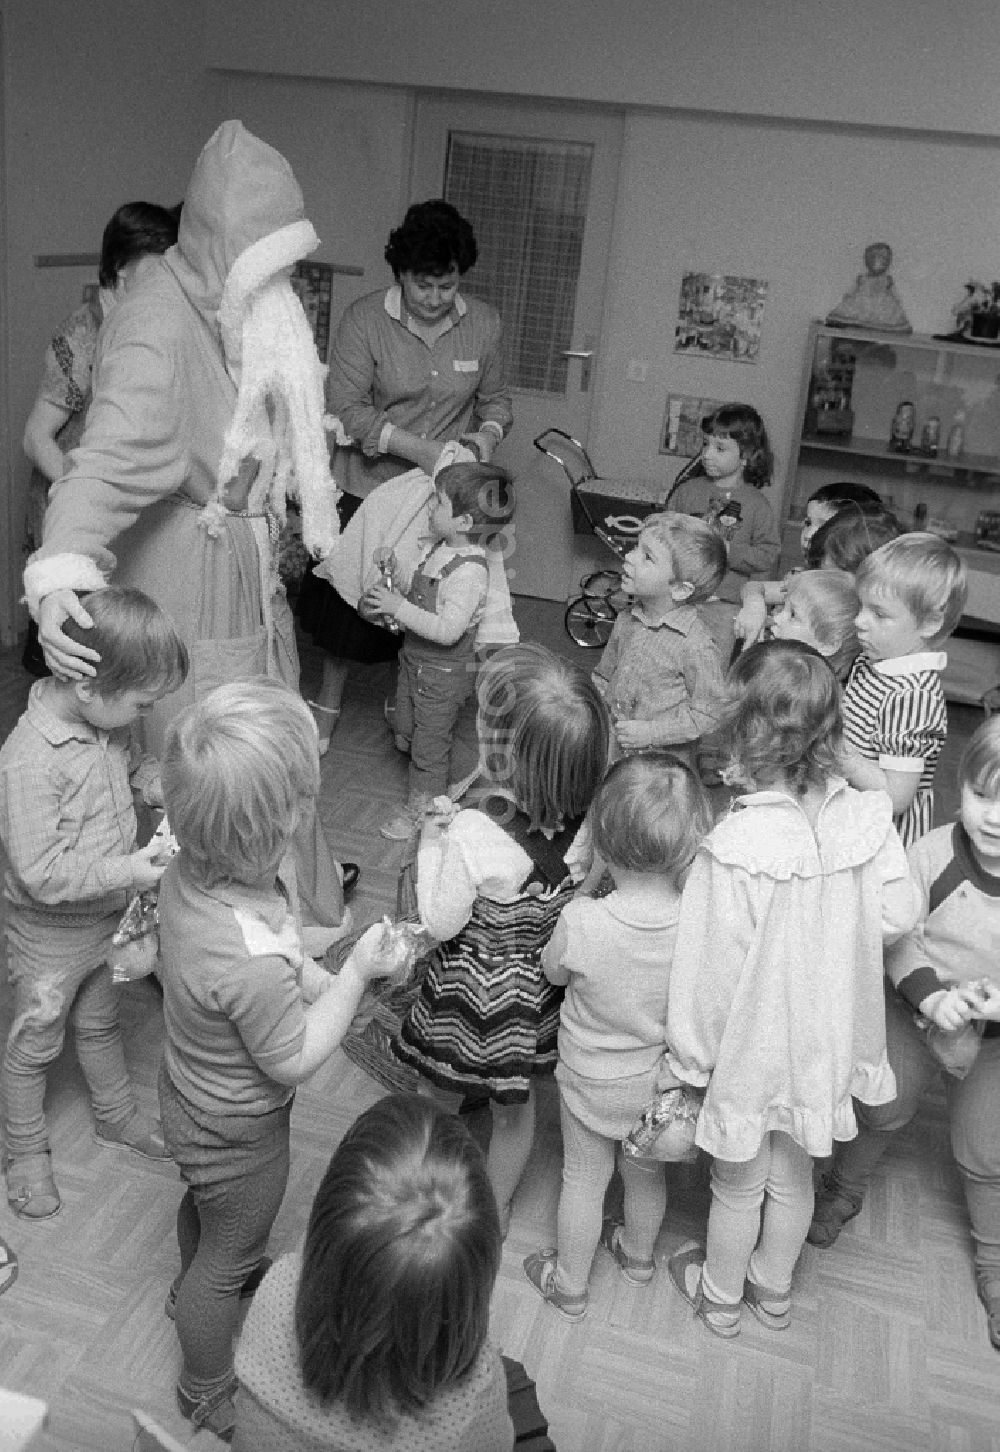 Berlin: Weihnachtsfeier im Kindergarten in Berlin, der ehemaligen Hauptstadt der DDR, Deutsche Demokratische Republik